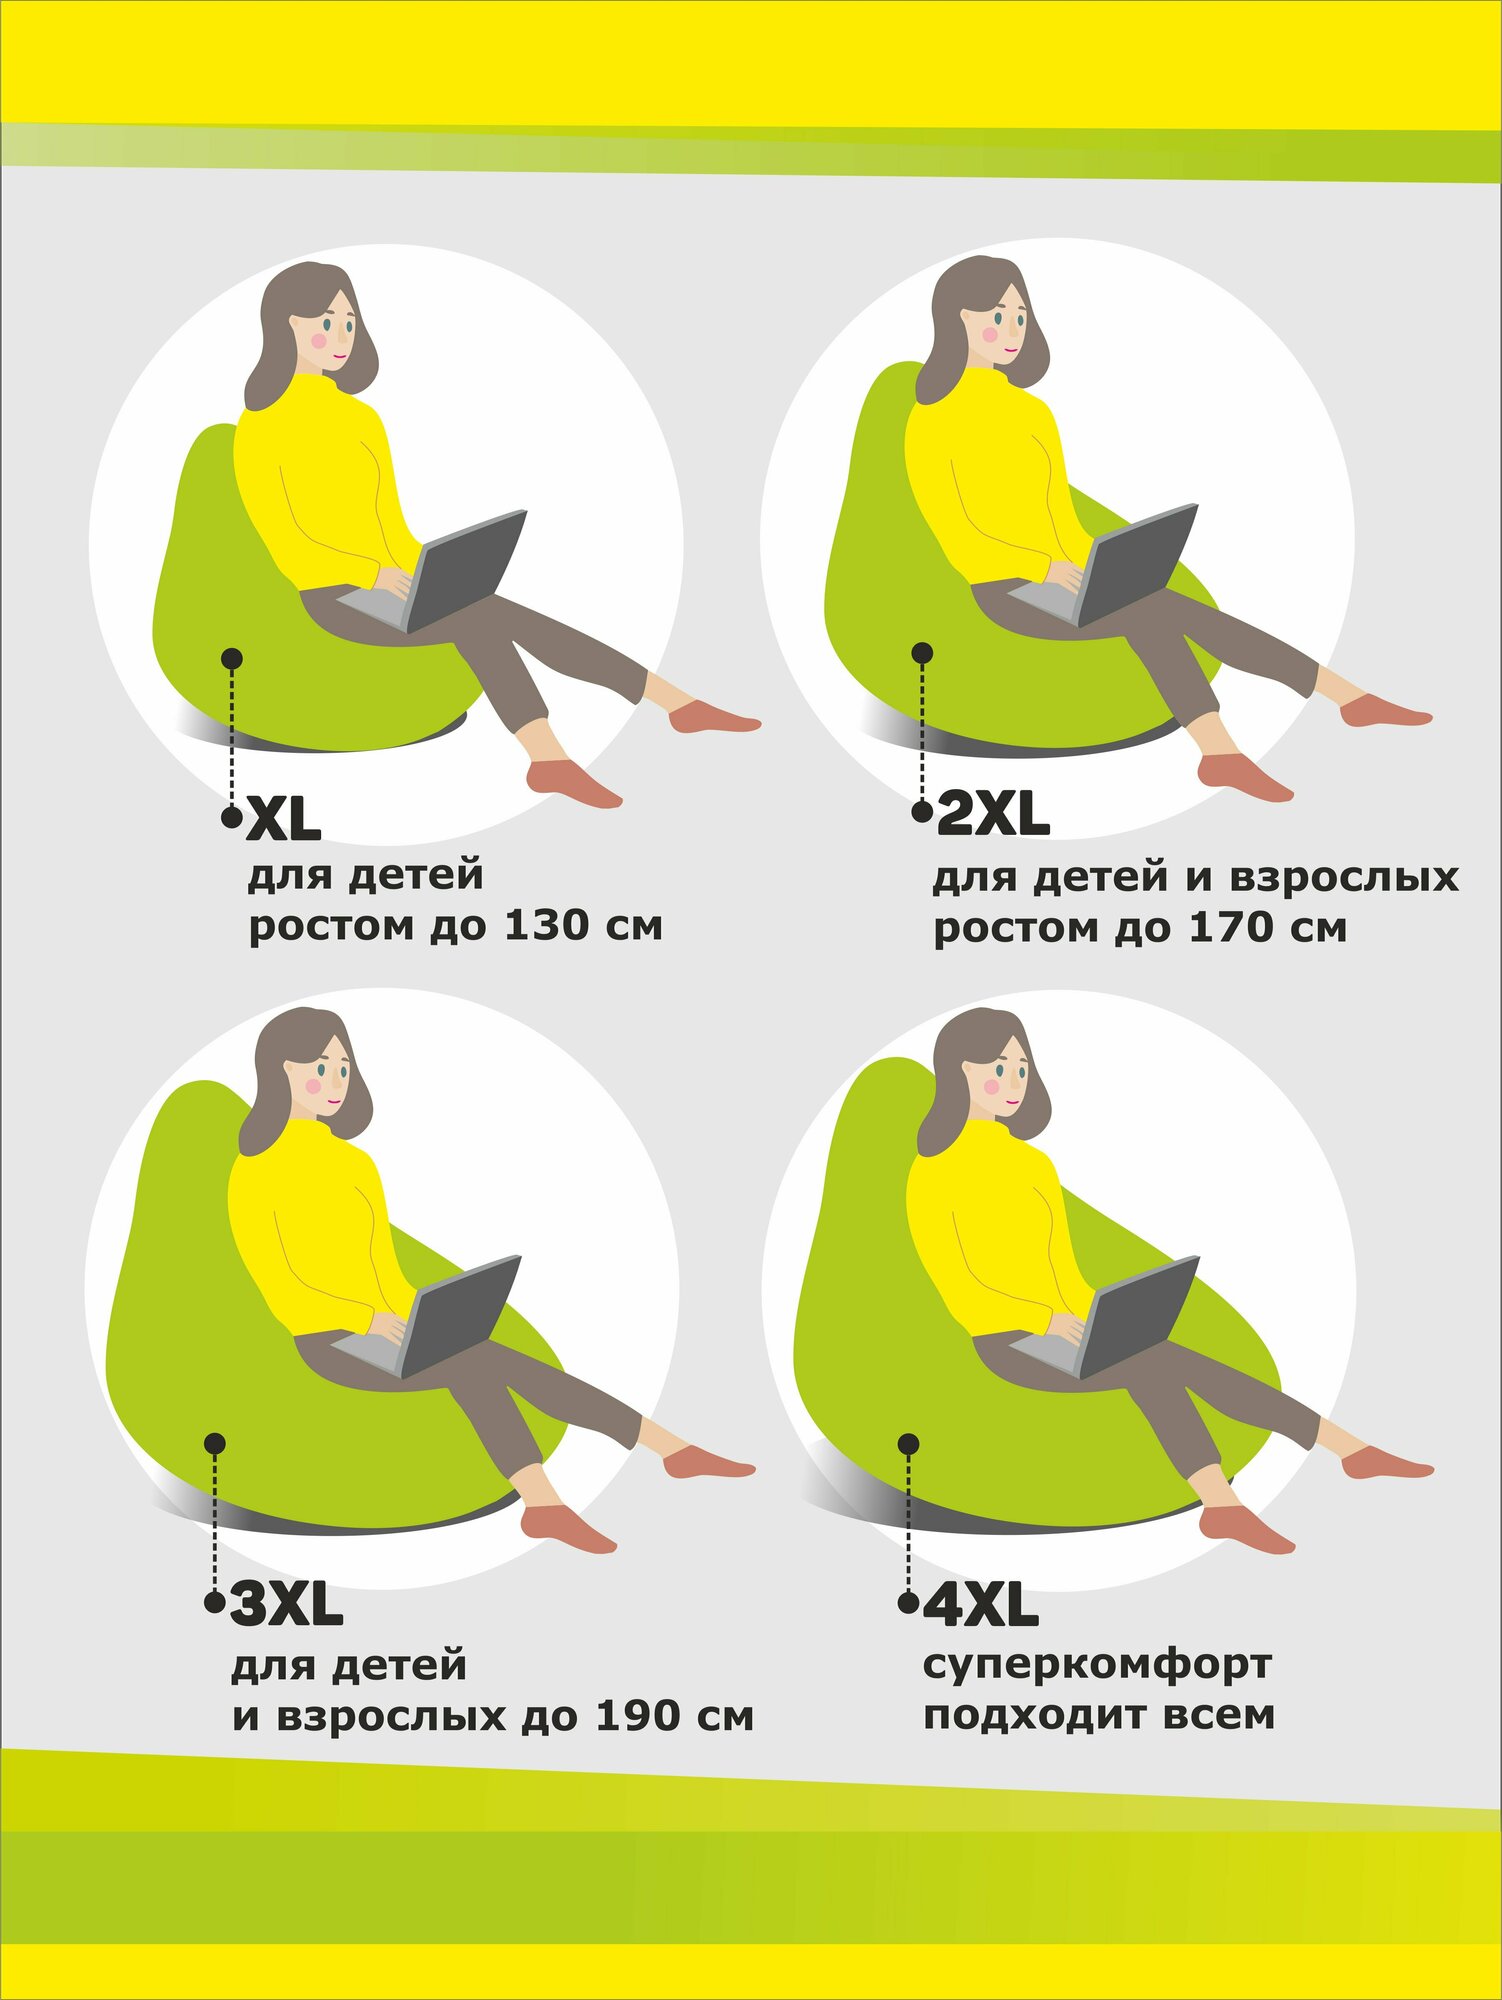 Кресло-мешок, 3D Мебель, Оксфорд, Размер XXL, цвет "Бордовый"